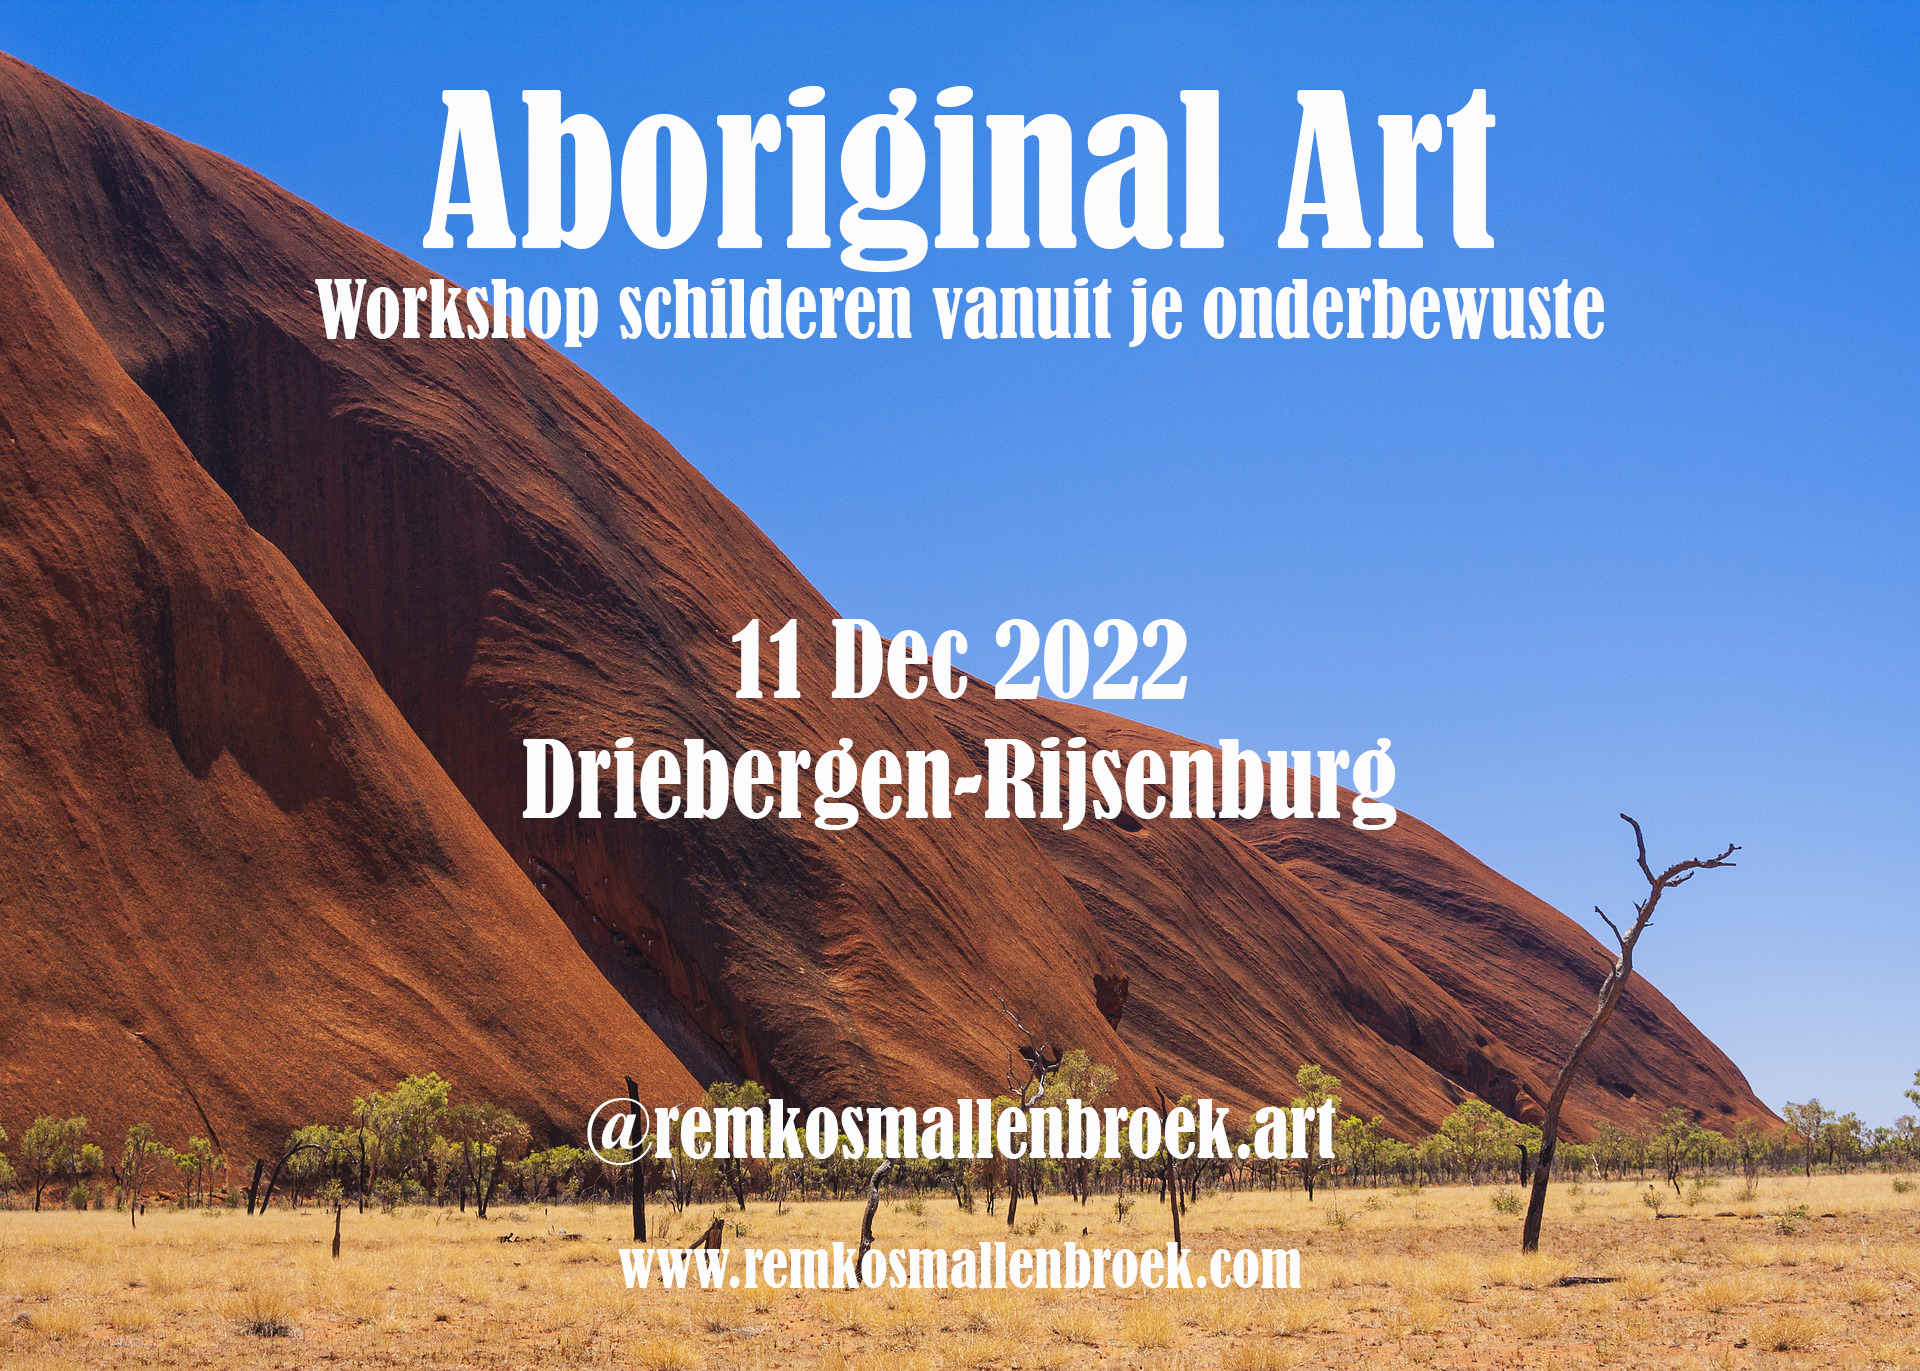 Workshop Aboriginal Art Driebergen